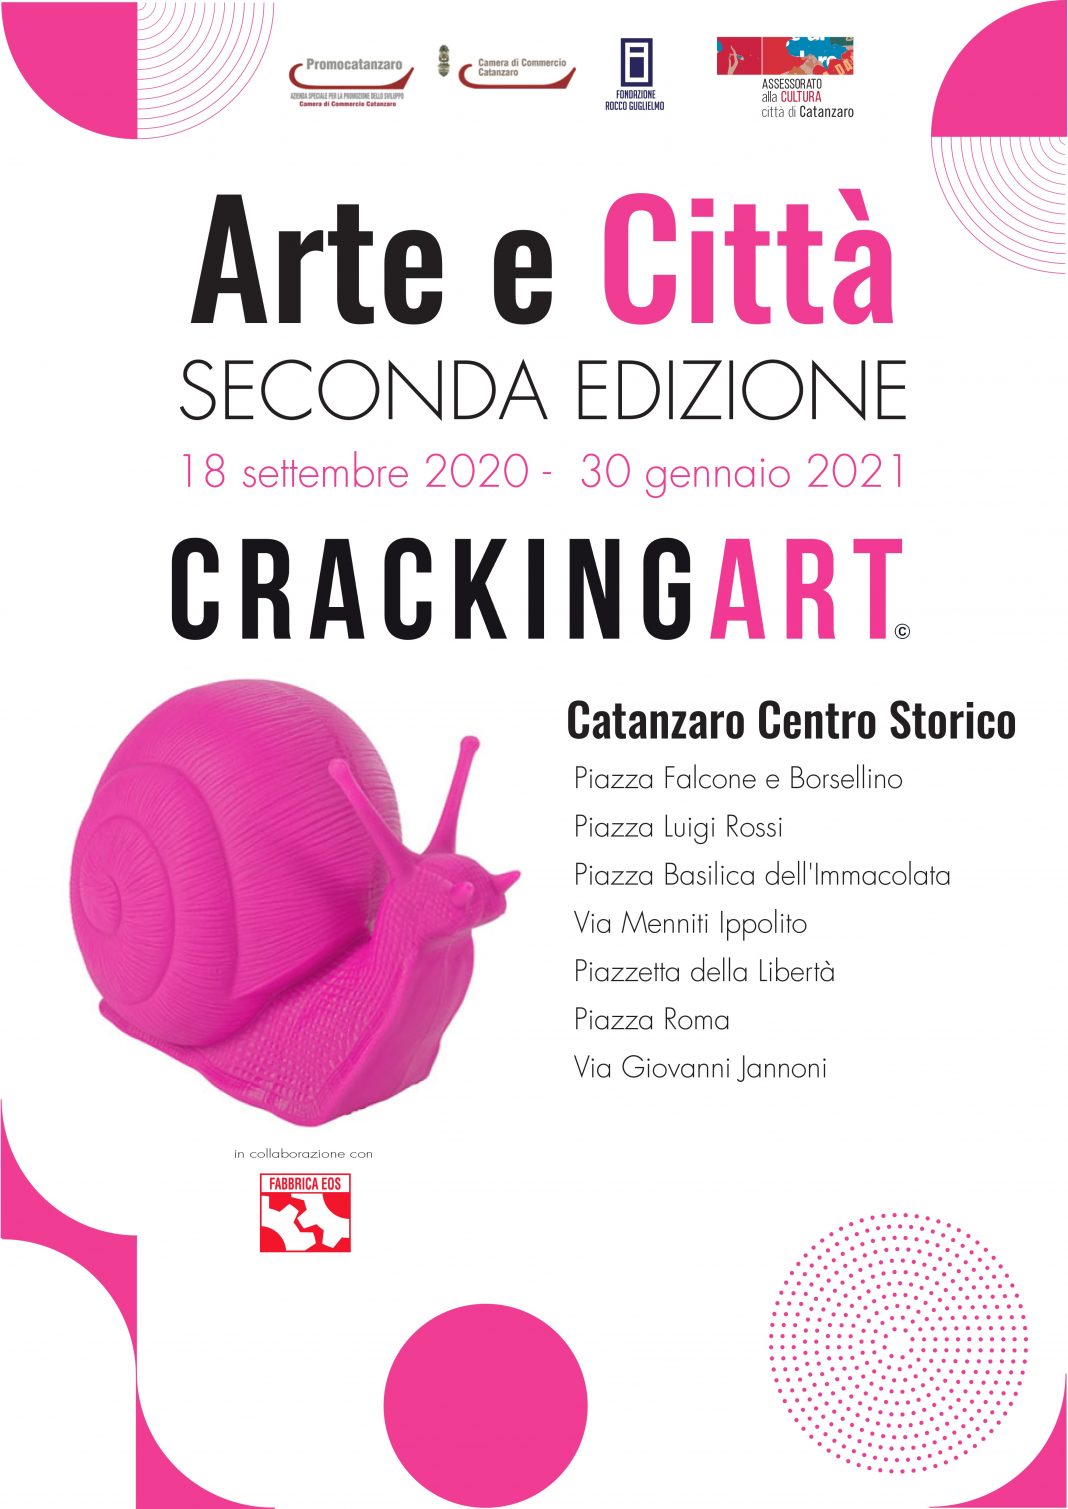 Arte e Città II Edizionehttps://www.exibart.com/repository/media/2020/09/LocArteeCitt-1068x1509.jpg